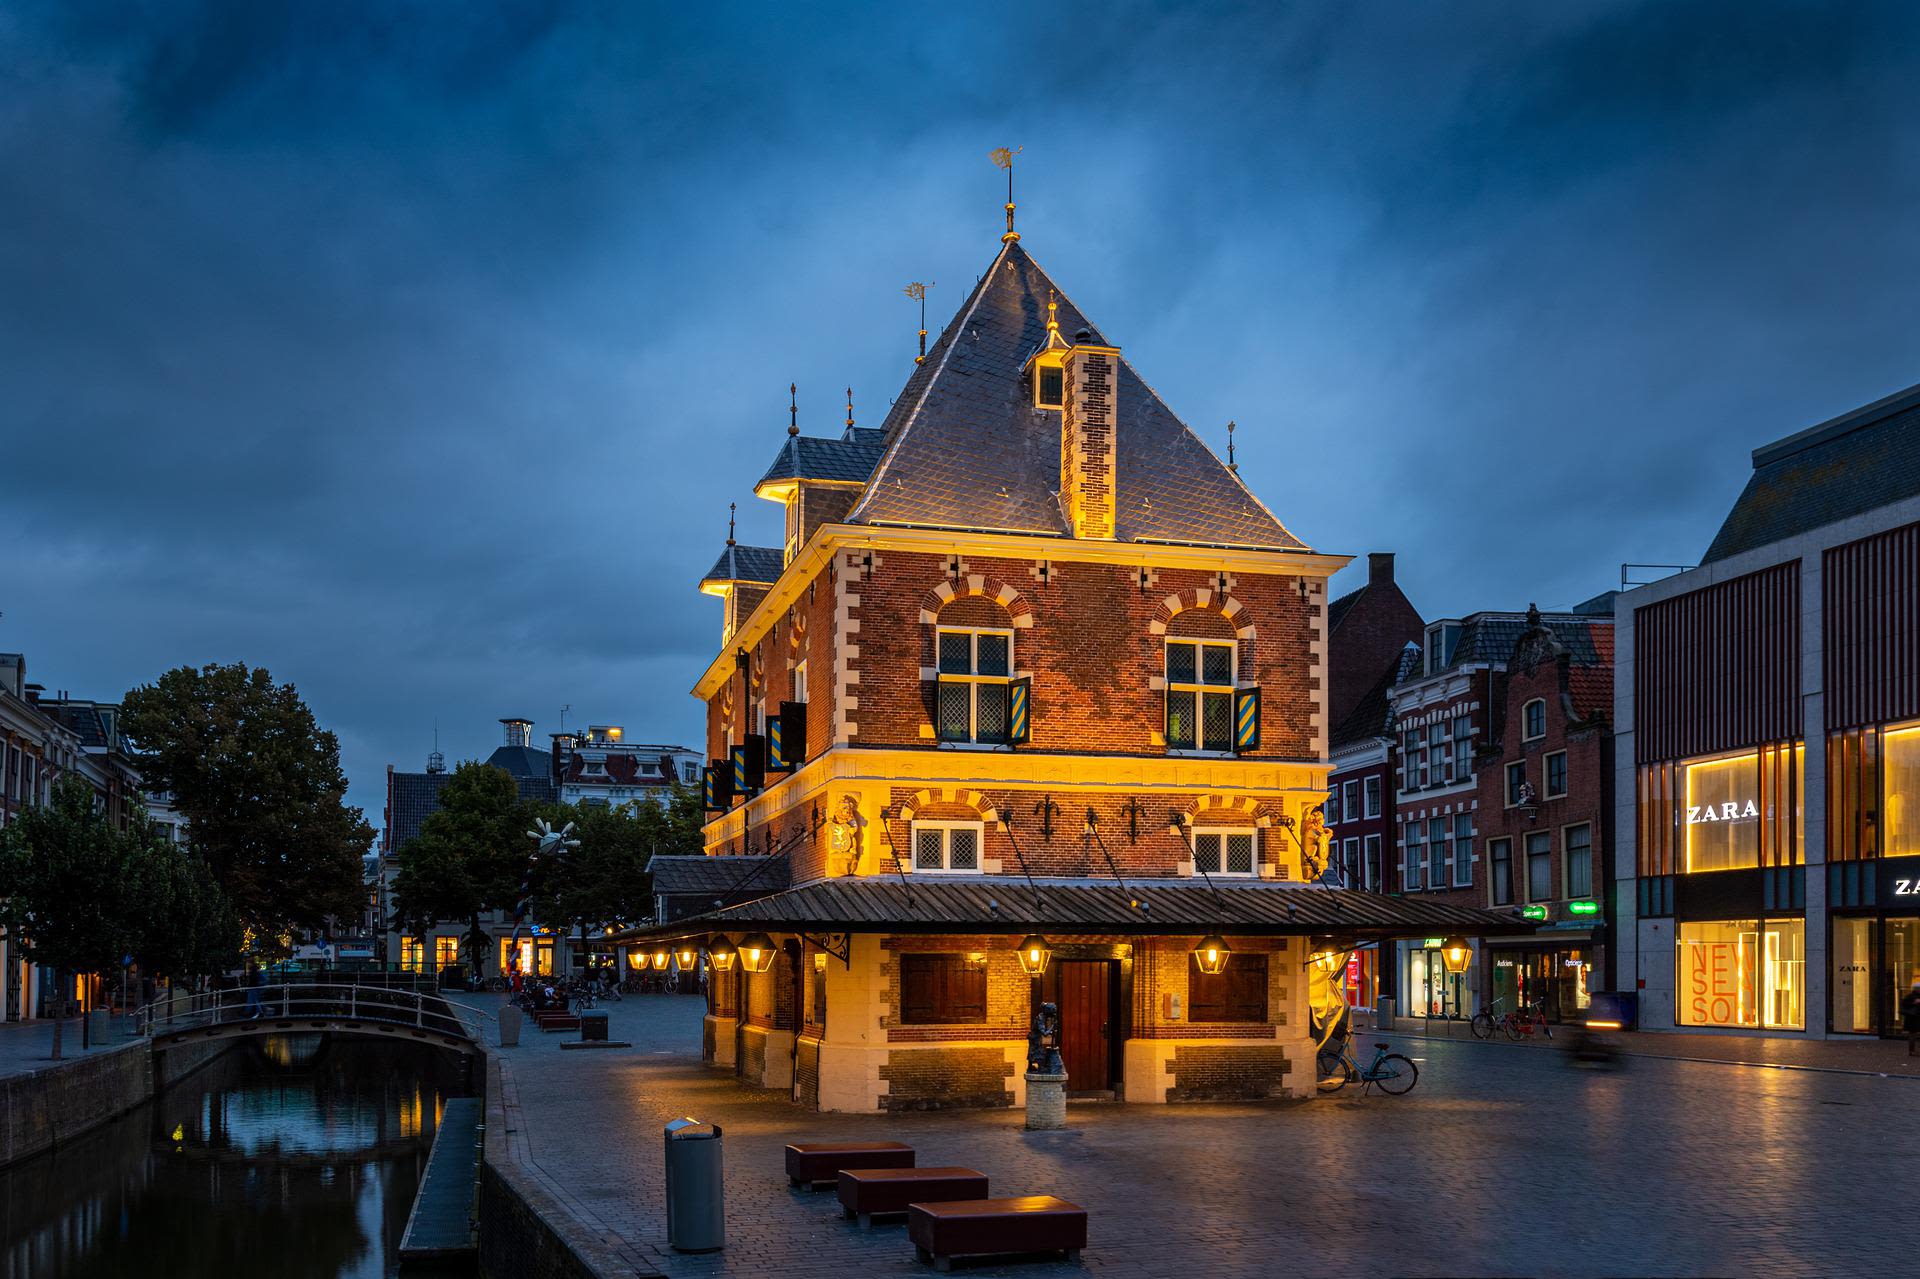 Friesland Beeld: Piet van de Wiel via Pixabay 